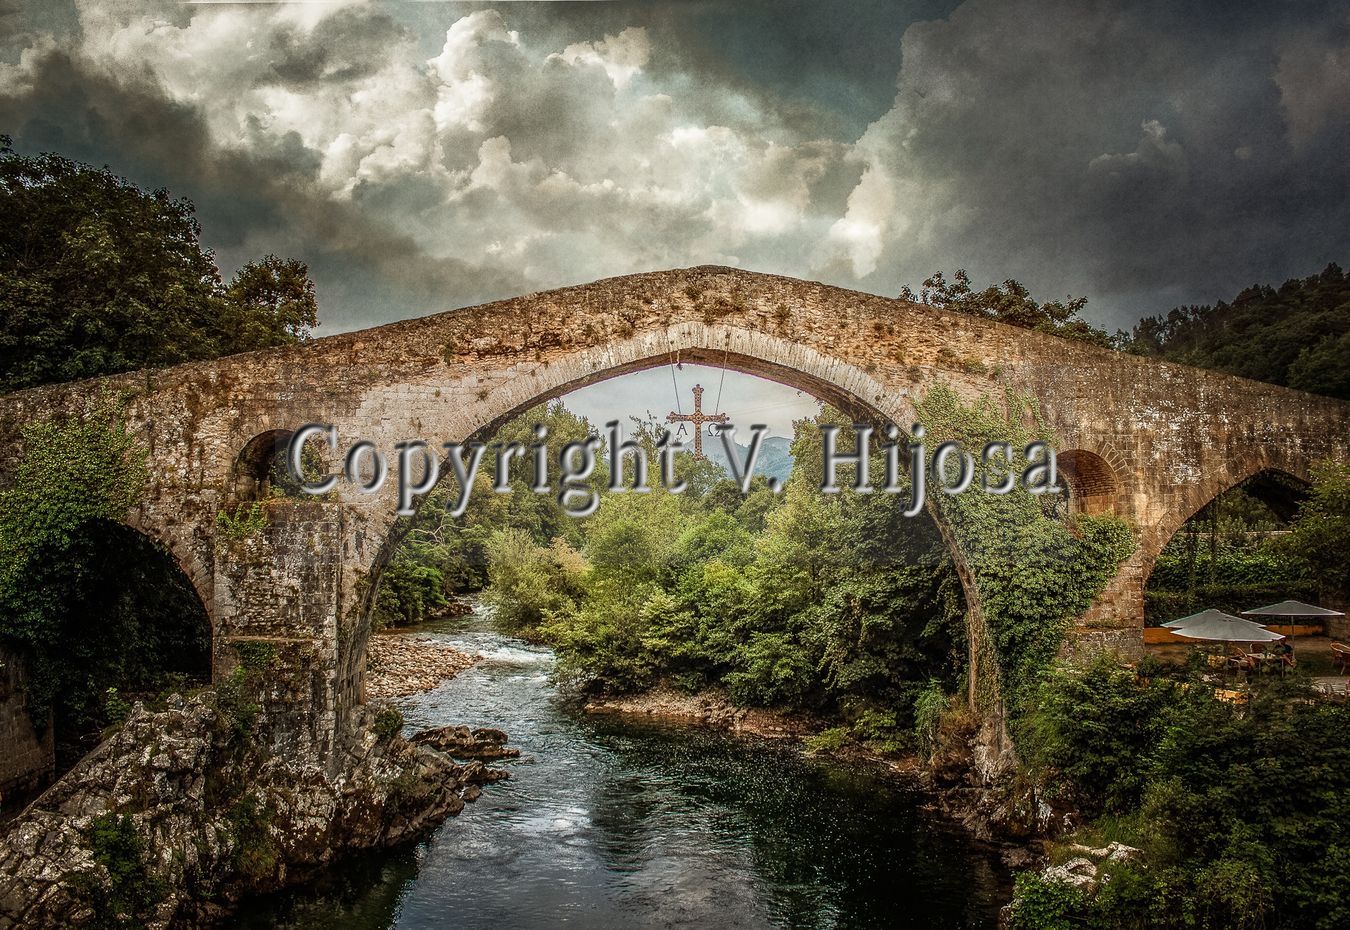 Puente romano de Cangas de Onís